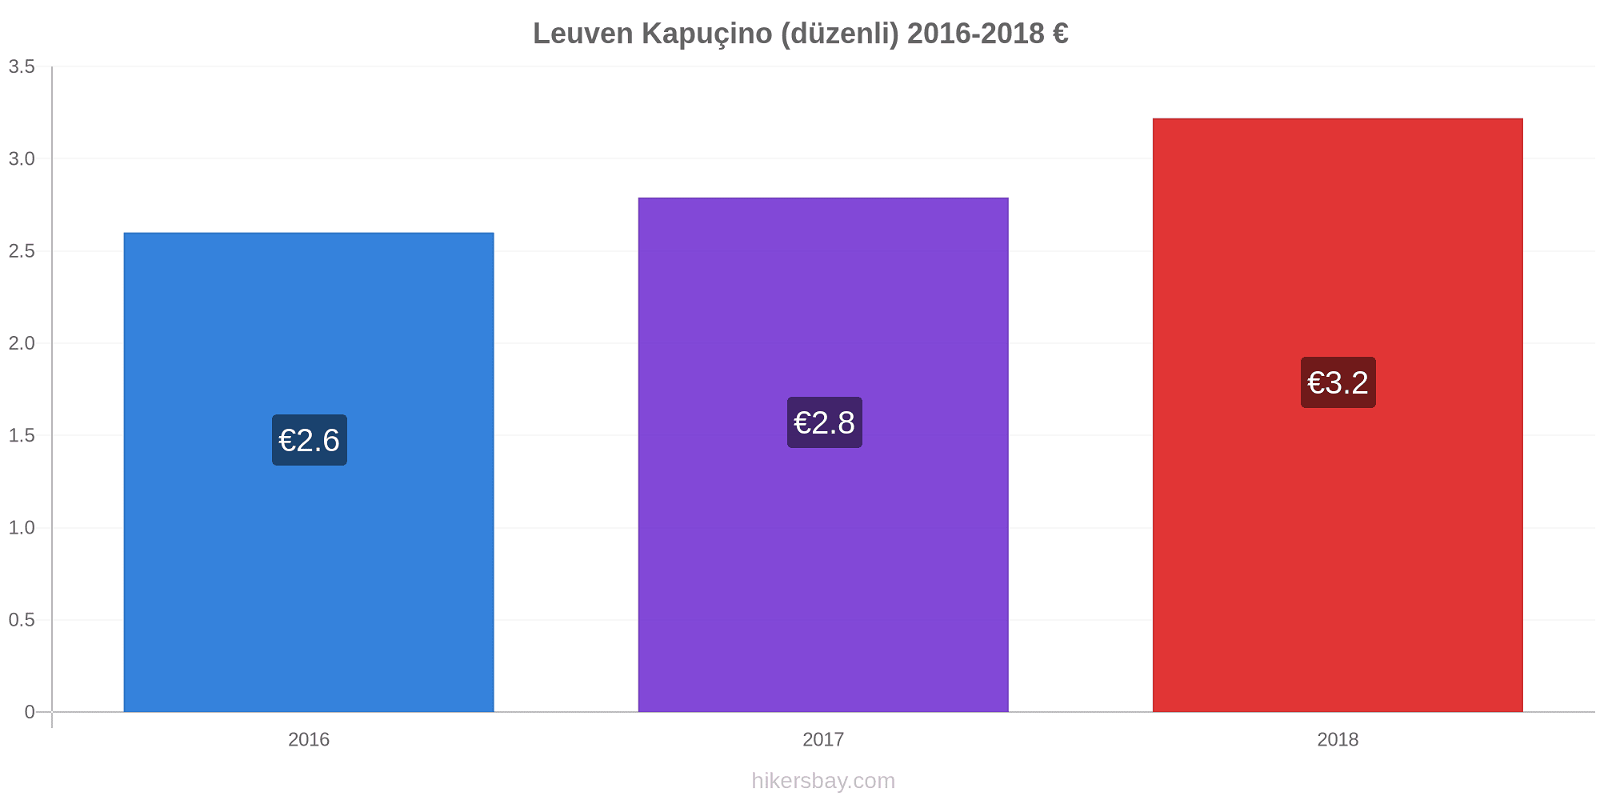 Leuven fiyat değişiklikleri Kapuçino (düzenli) hikersbay.com